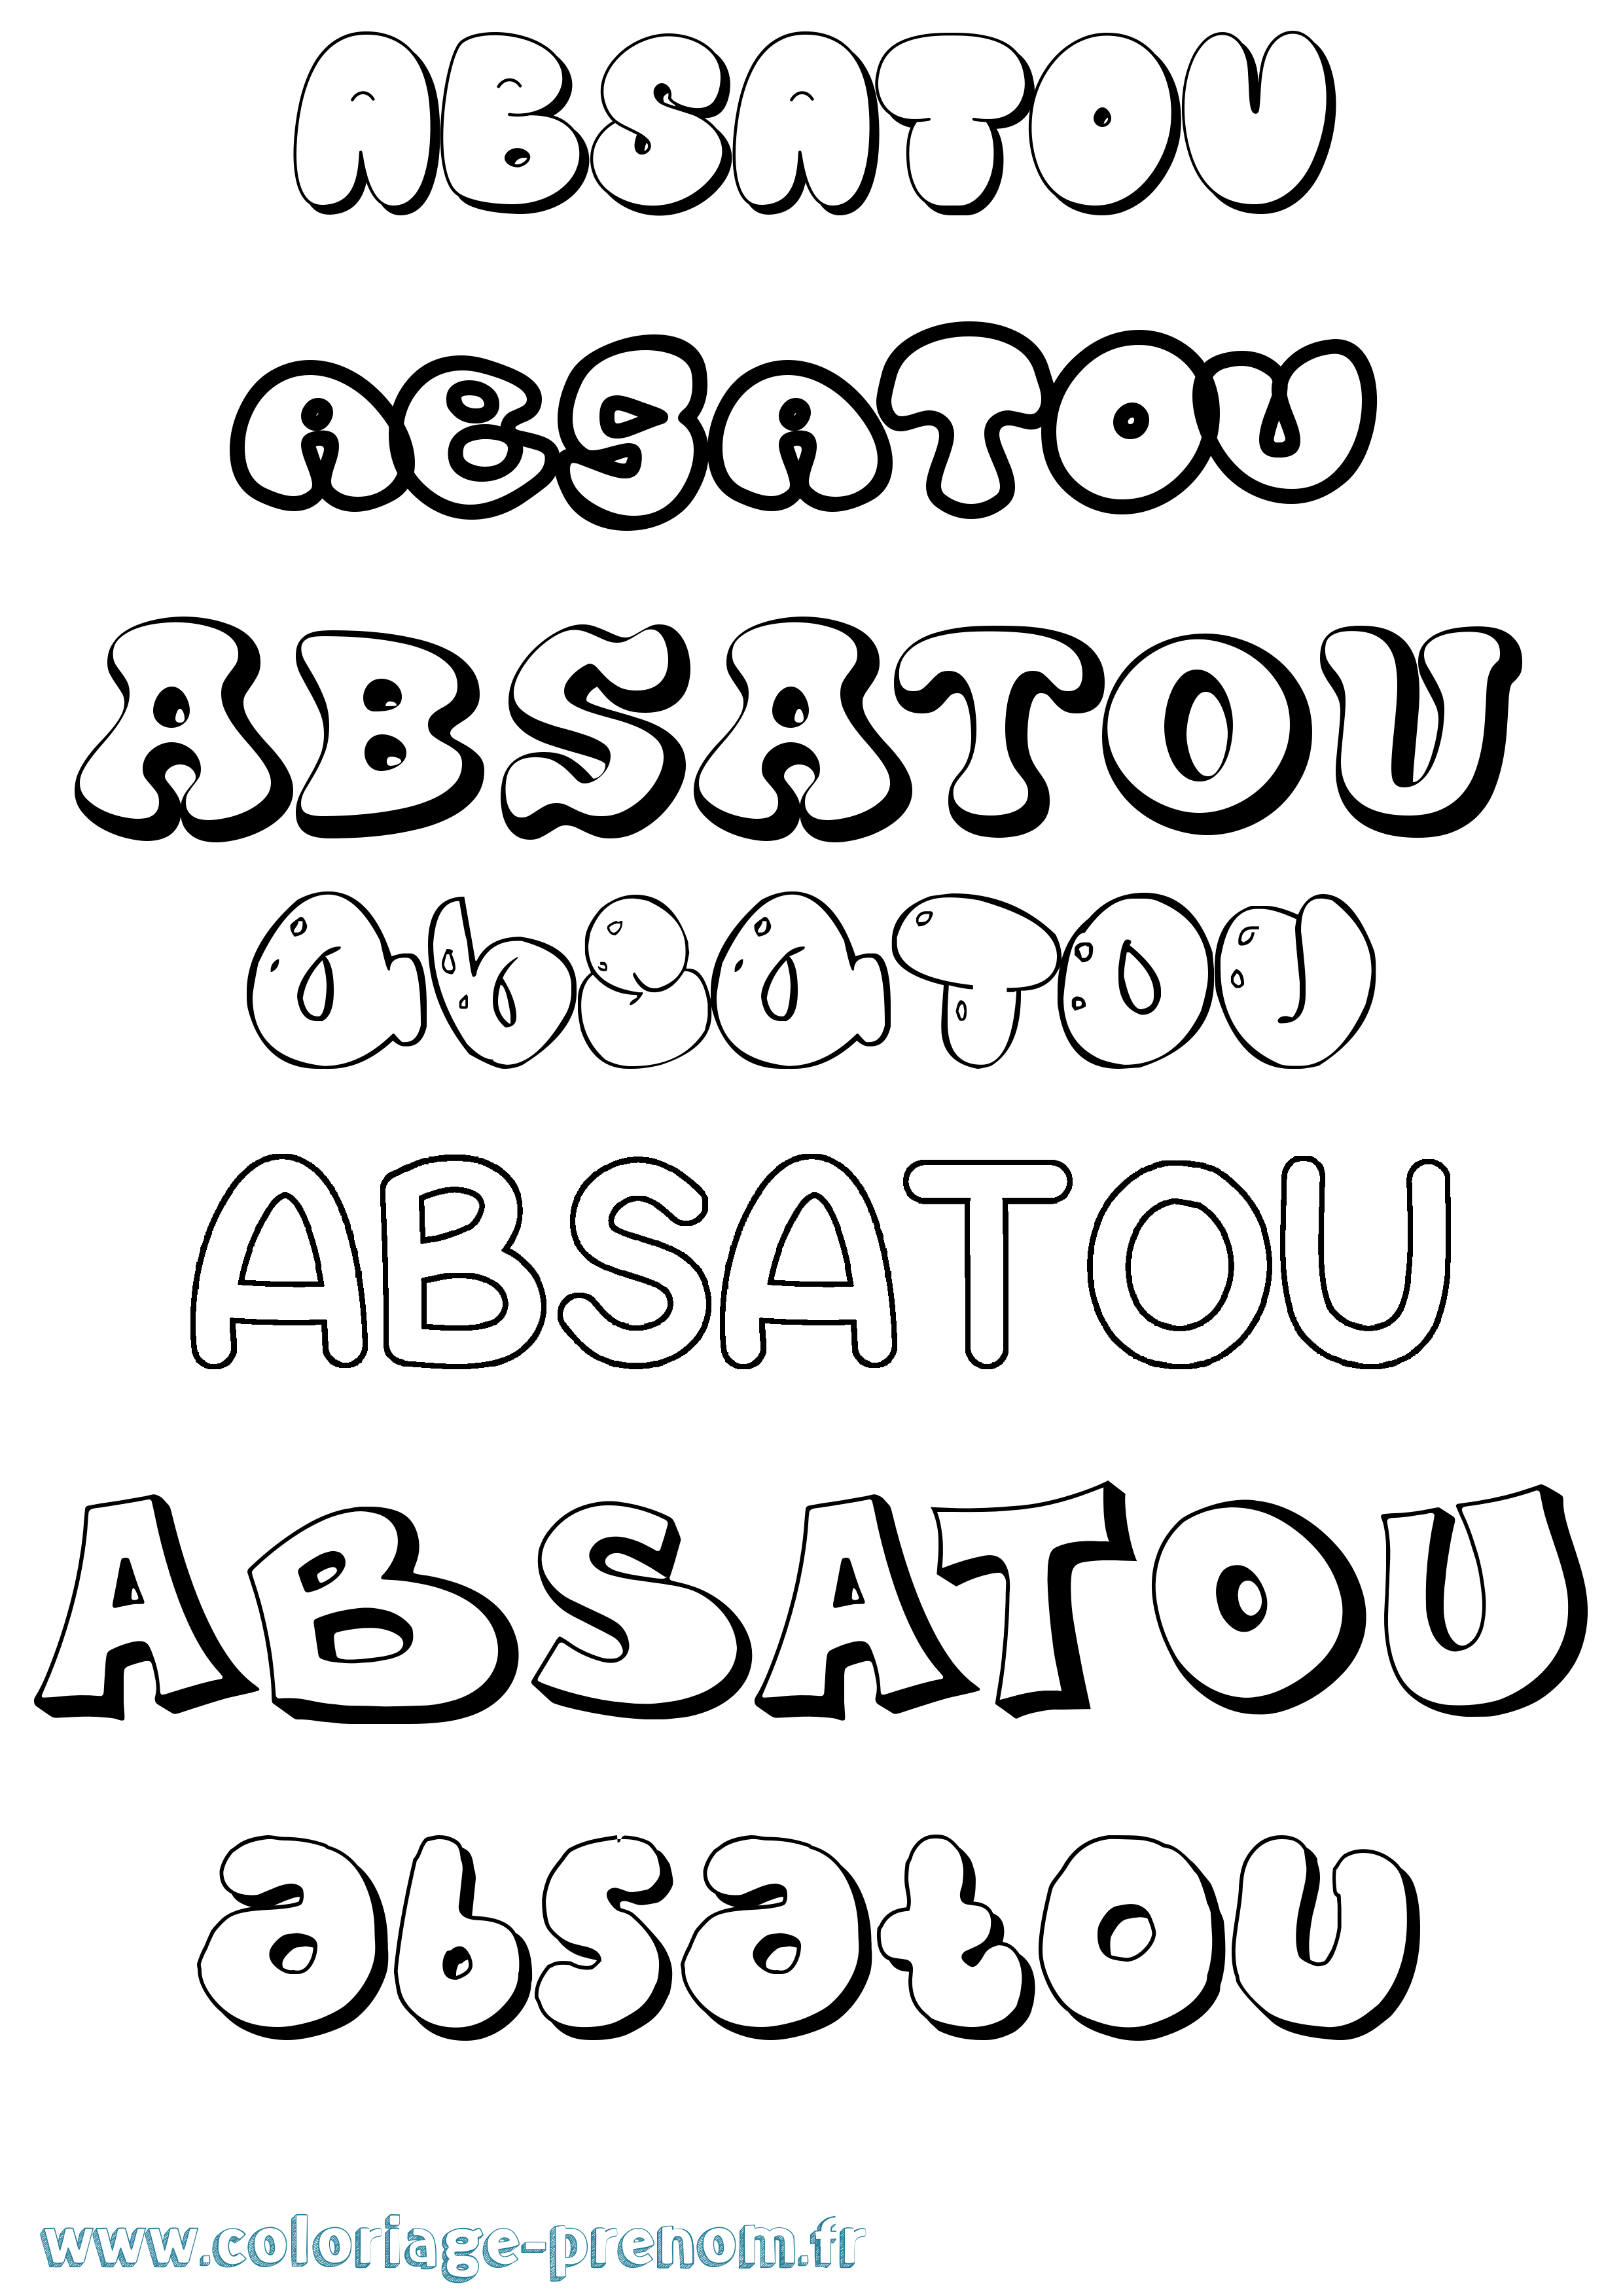 Coloriage prénom Absatou Bubble